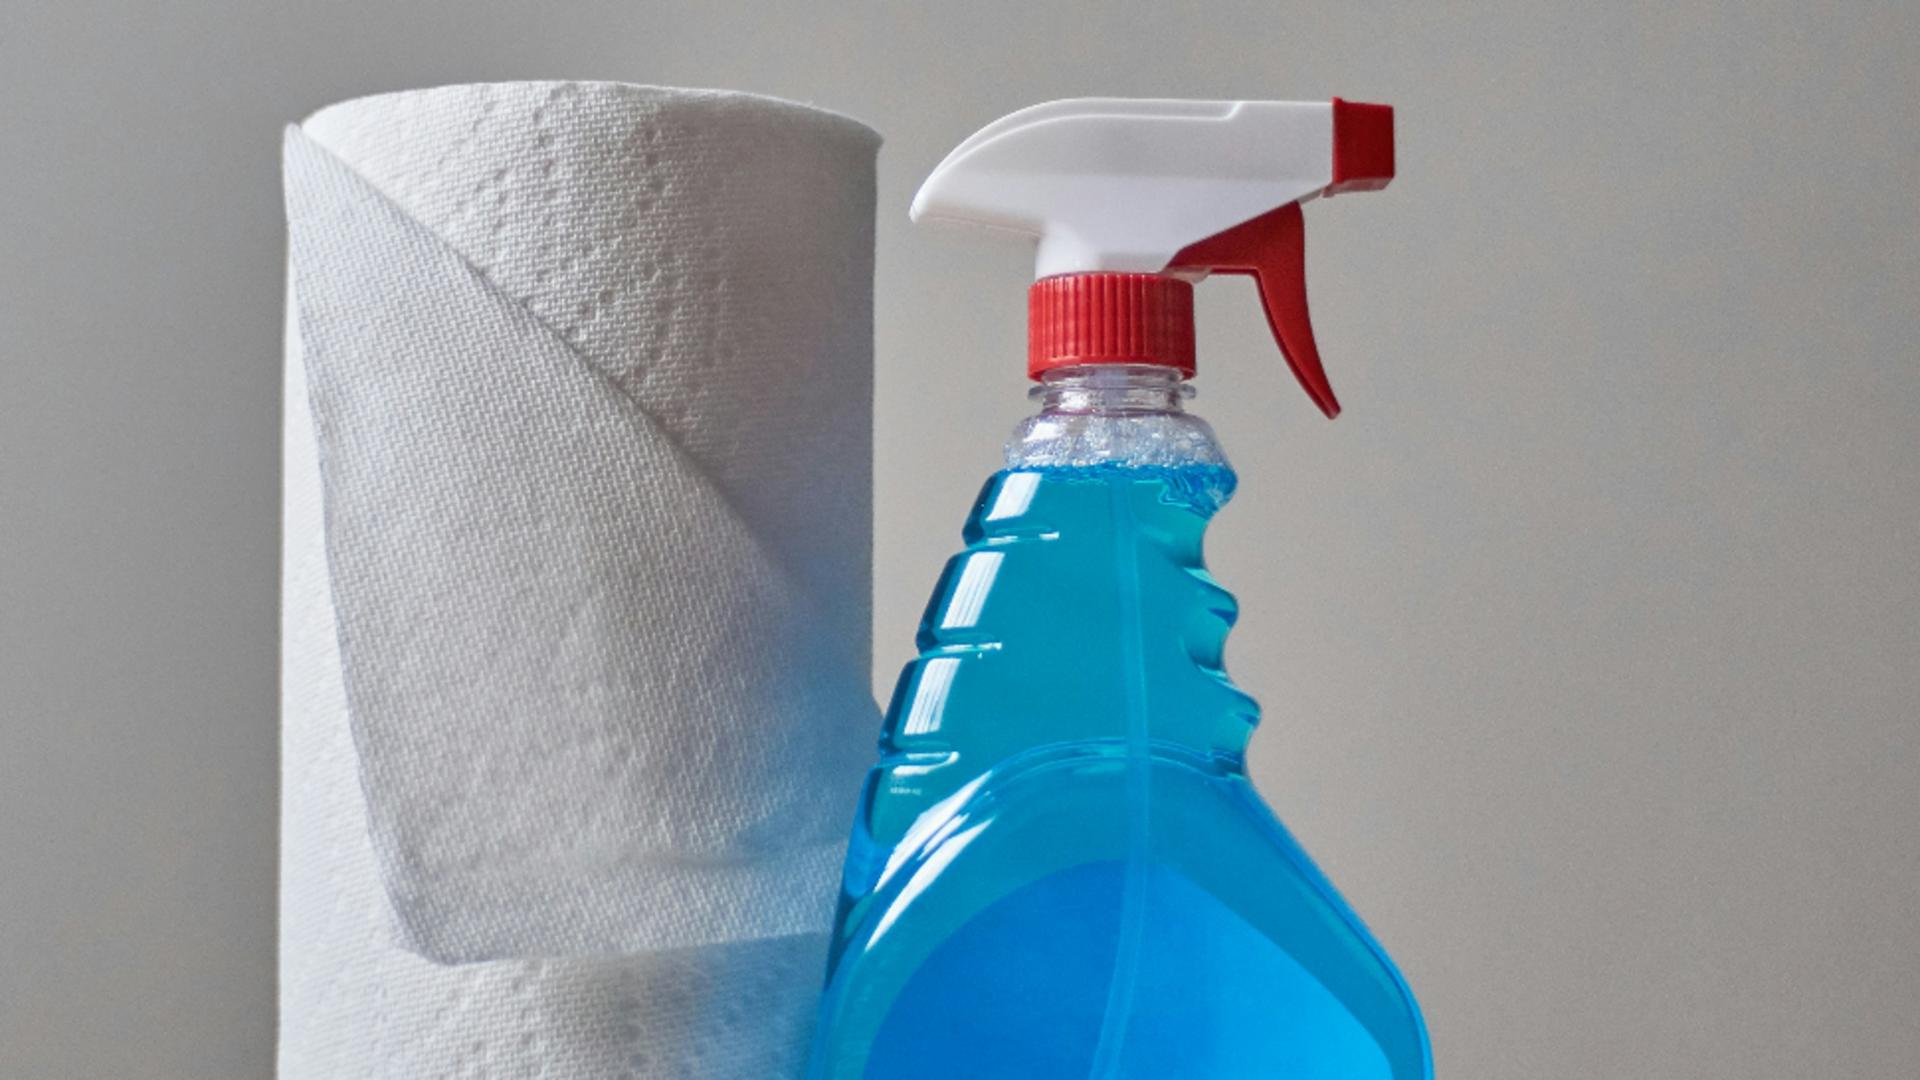 Fără bătăi de cap! 7 metode simple pentru a curăța rapid și eficient rosturile din bucătărie și baie / unsplash.com